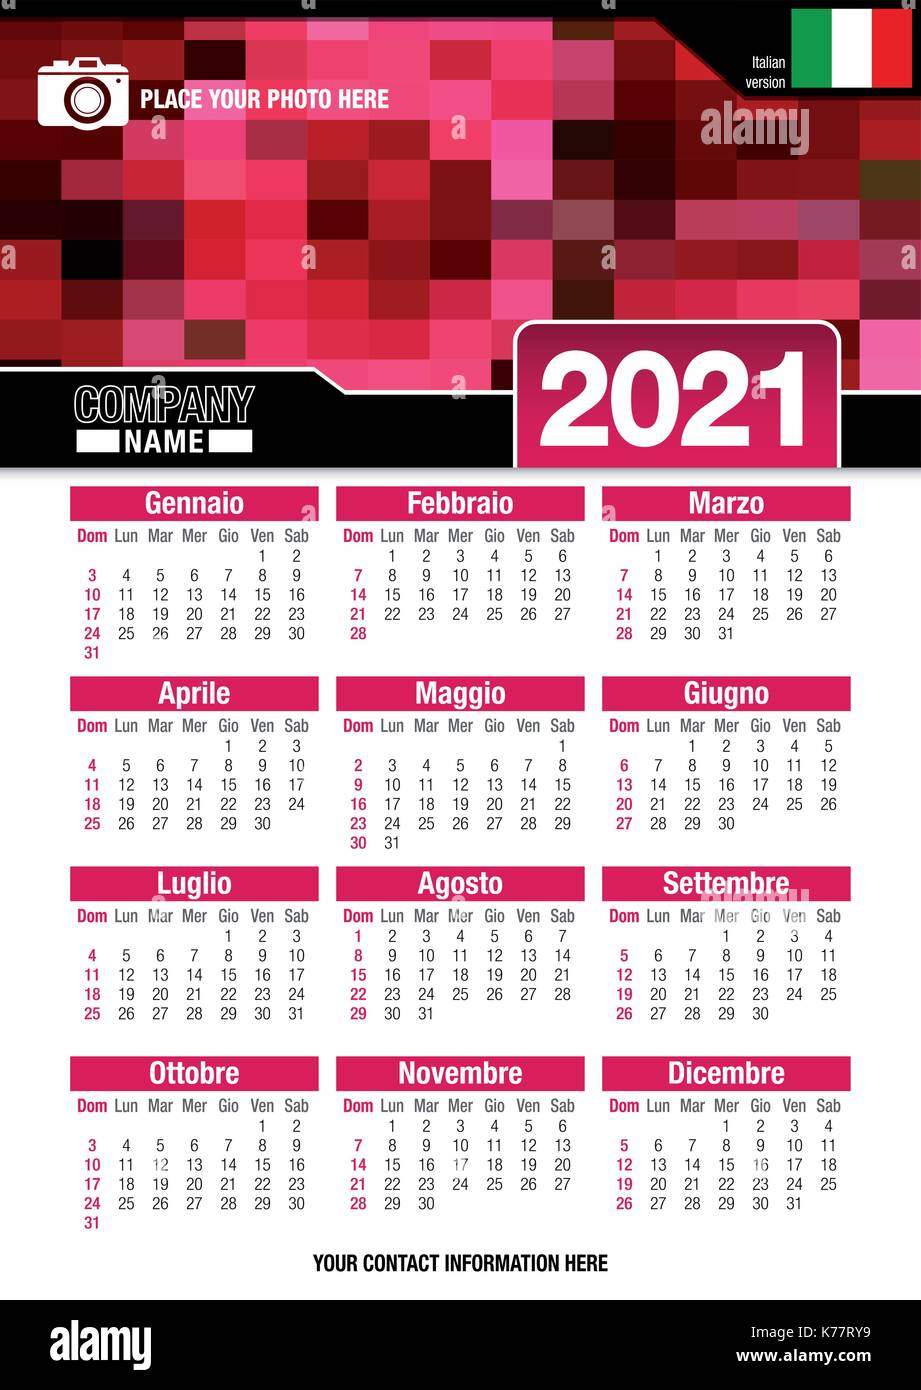 Utile calendario da parete 2021 con design di colori rosso mosaico. Formato A4 verticale. Dimensioni: 210mm x 297mm. Versione italiana - immagine vettoriale Illustrazione Vettoriale